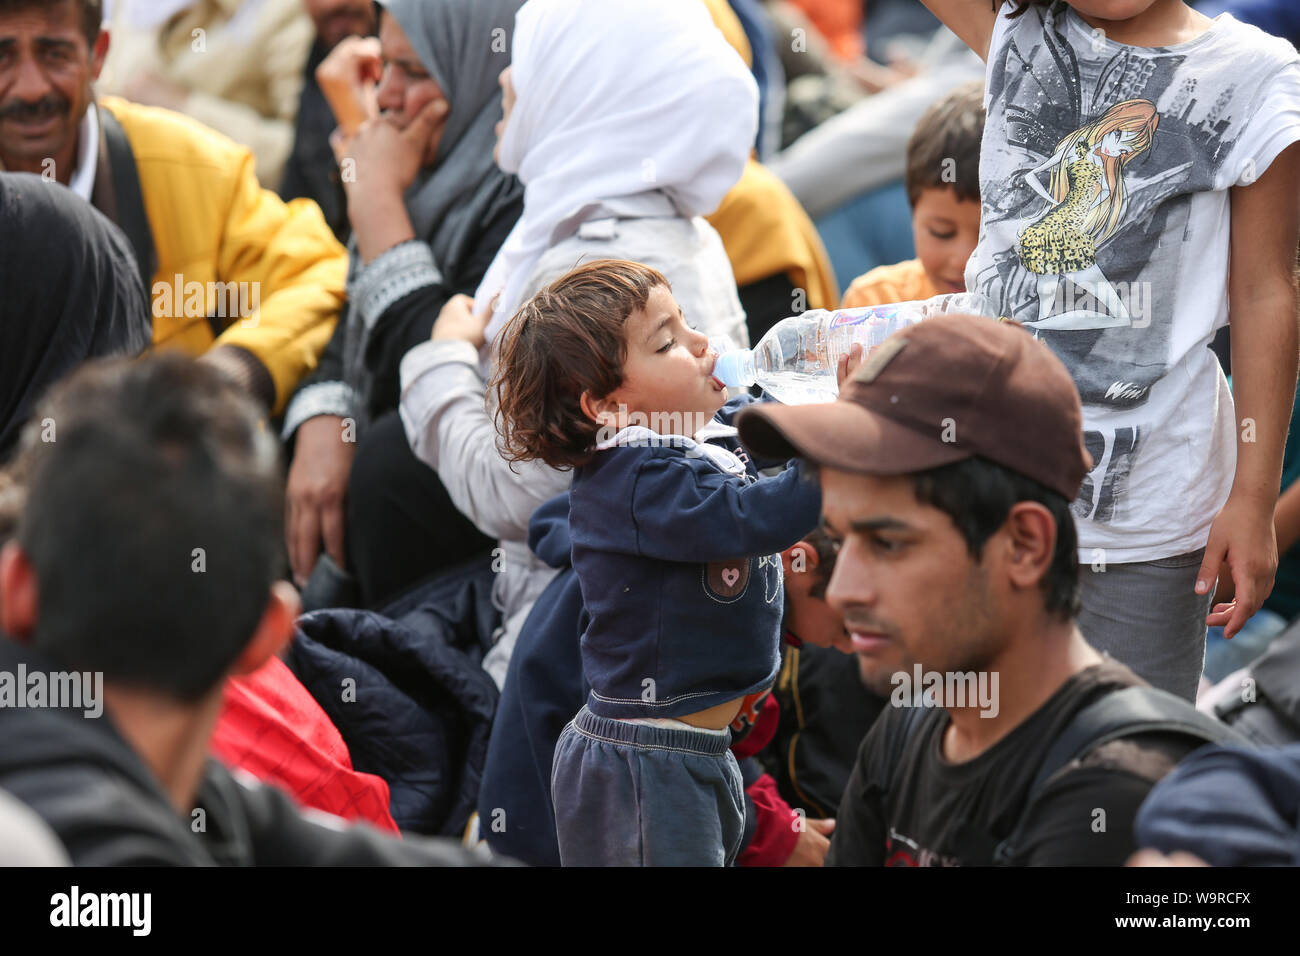 Bregana, Slowenien - 20. September 2015: Eine kleine syrische Kind Trinkwasser aus der Flasche unter Flüchtlingen an der slowenischen Grenze mit Kroatien. Die Stockfoto